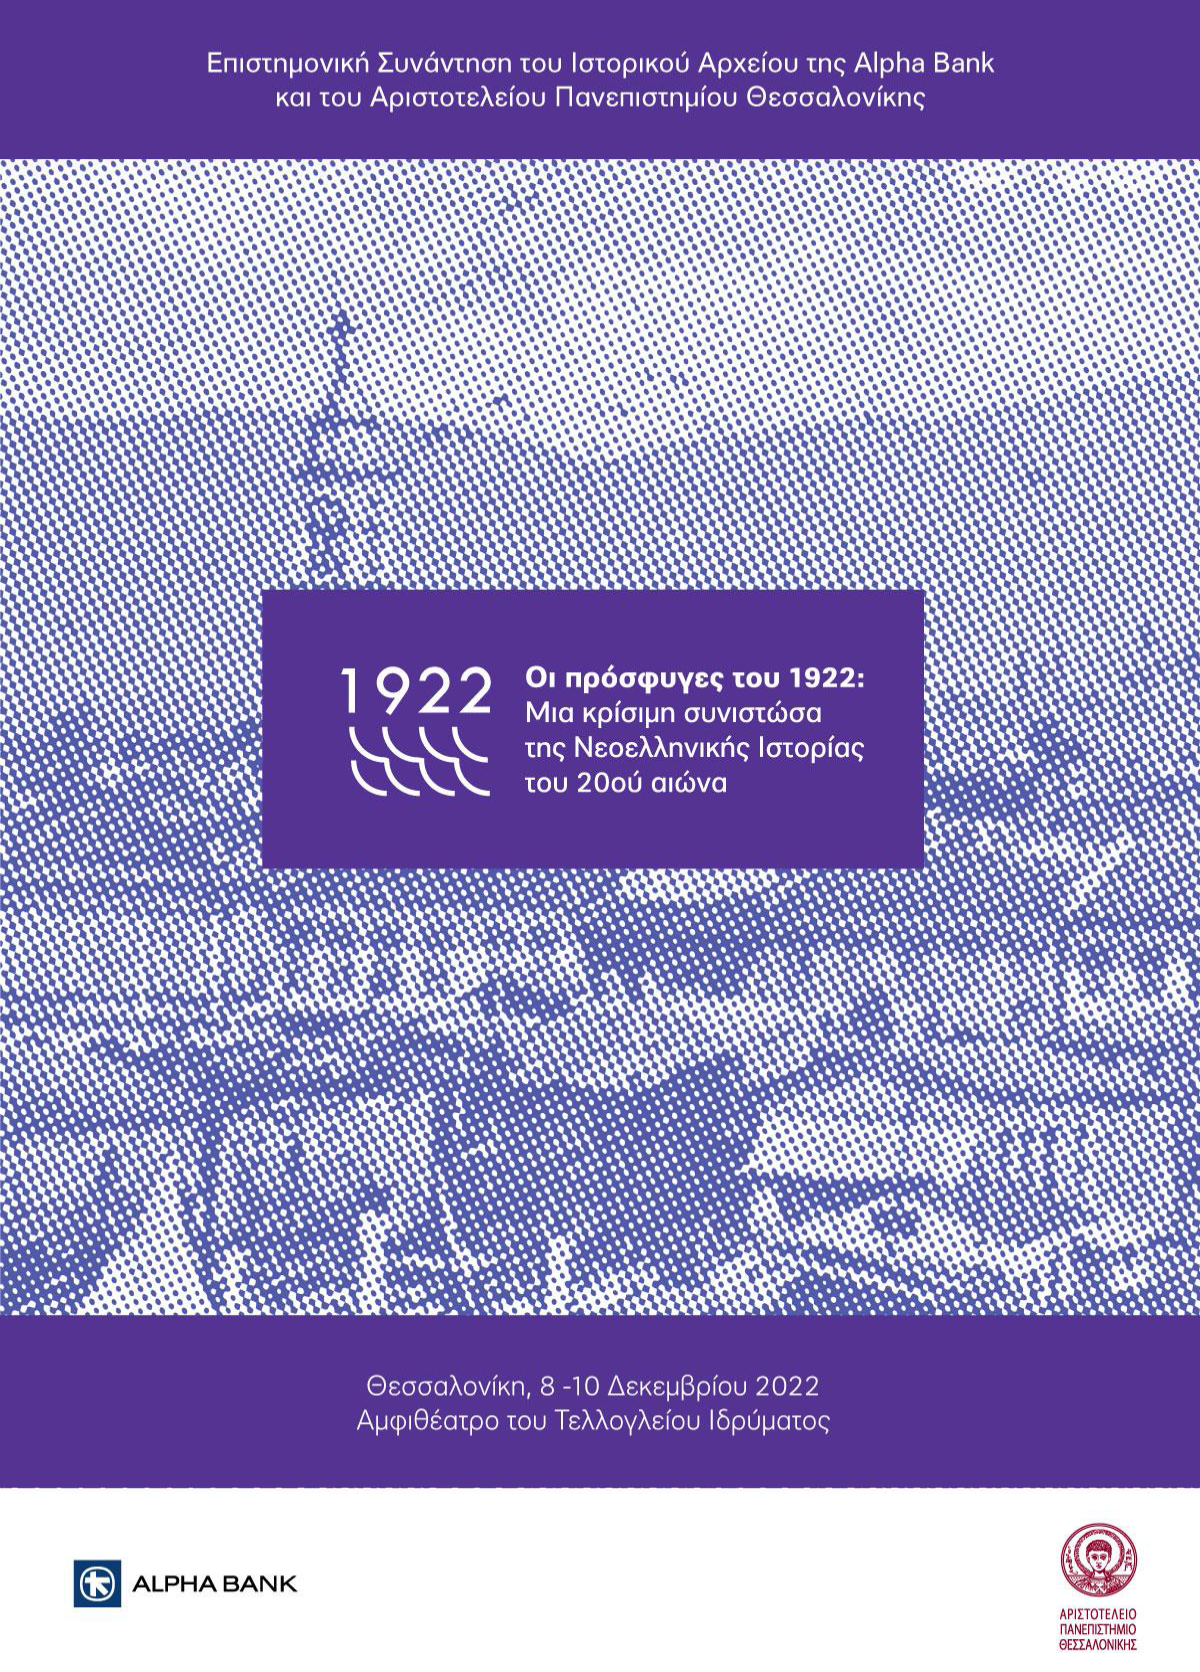 Επιστημονική Συνάντηση με τίτλο: “Οι Πρόσφυγες του 1922: Μια κρίσιμη συνιστώσα της Νεοελληνικής Ιστορίας του 20ου αιώνα”